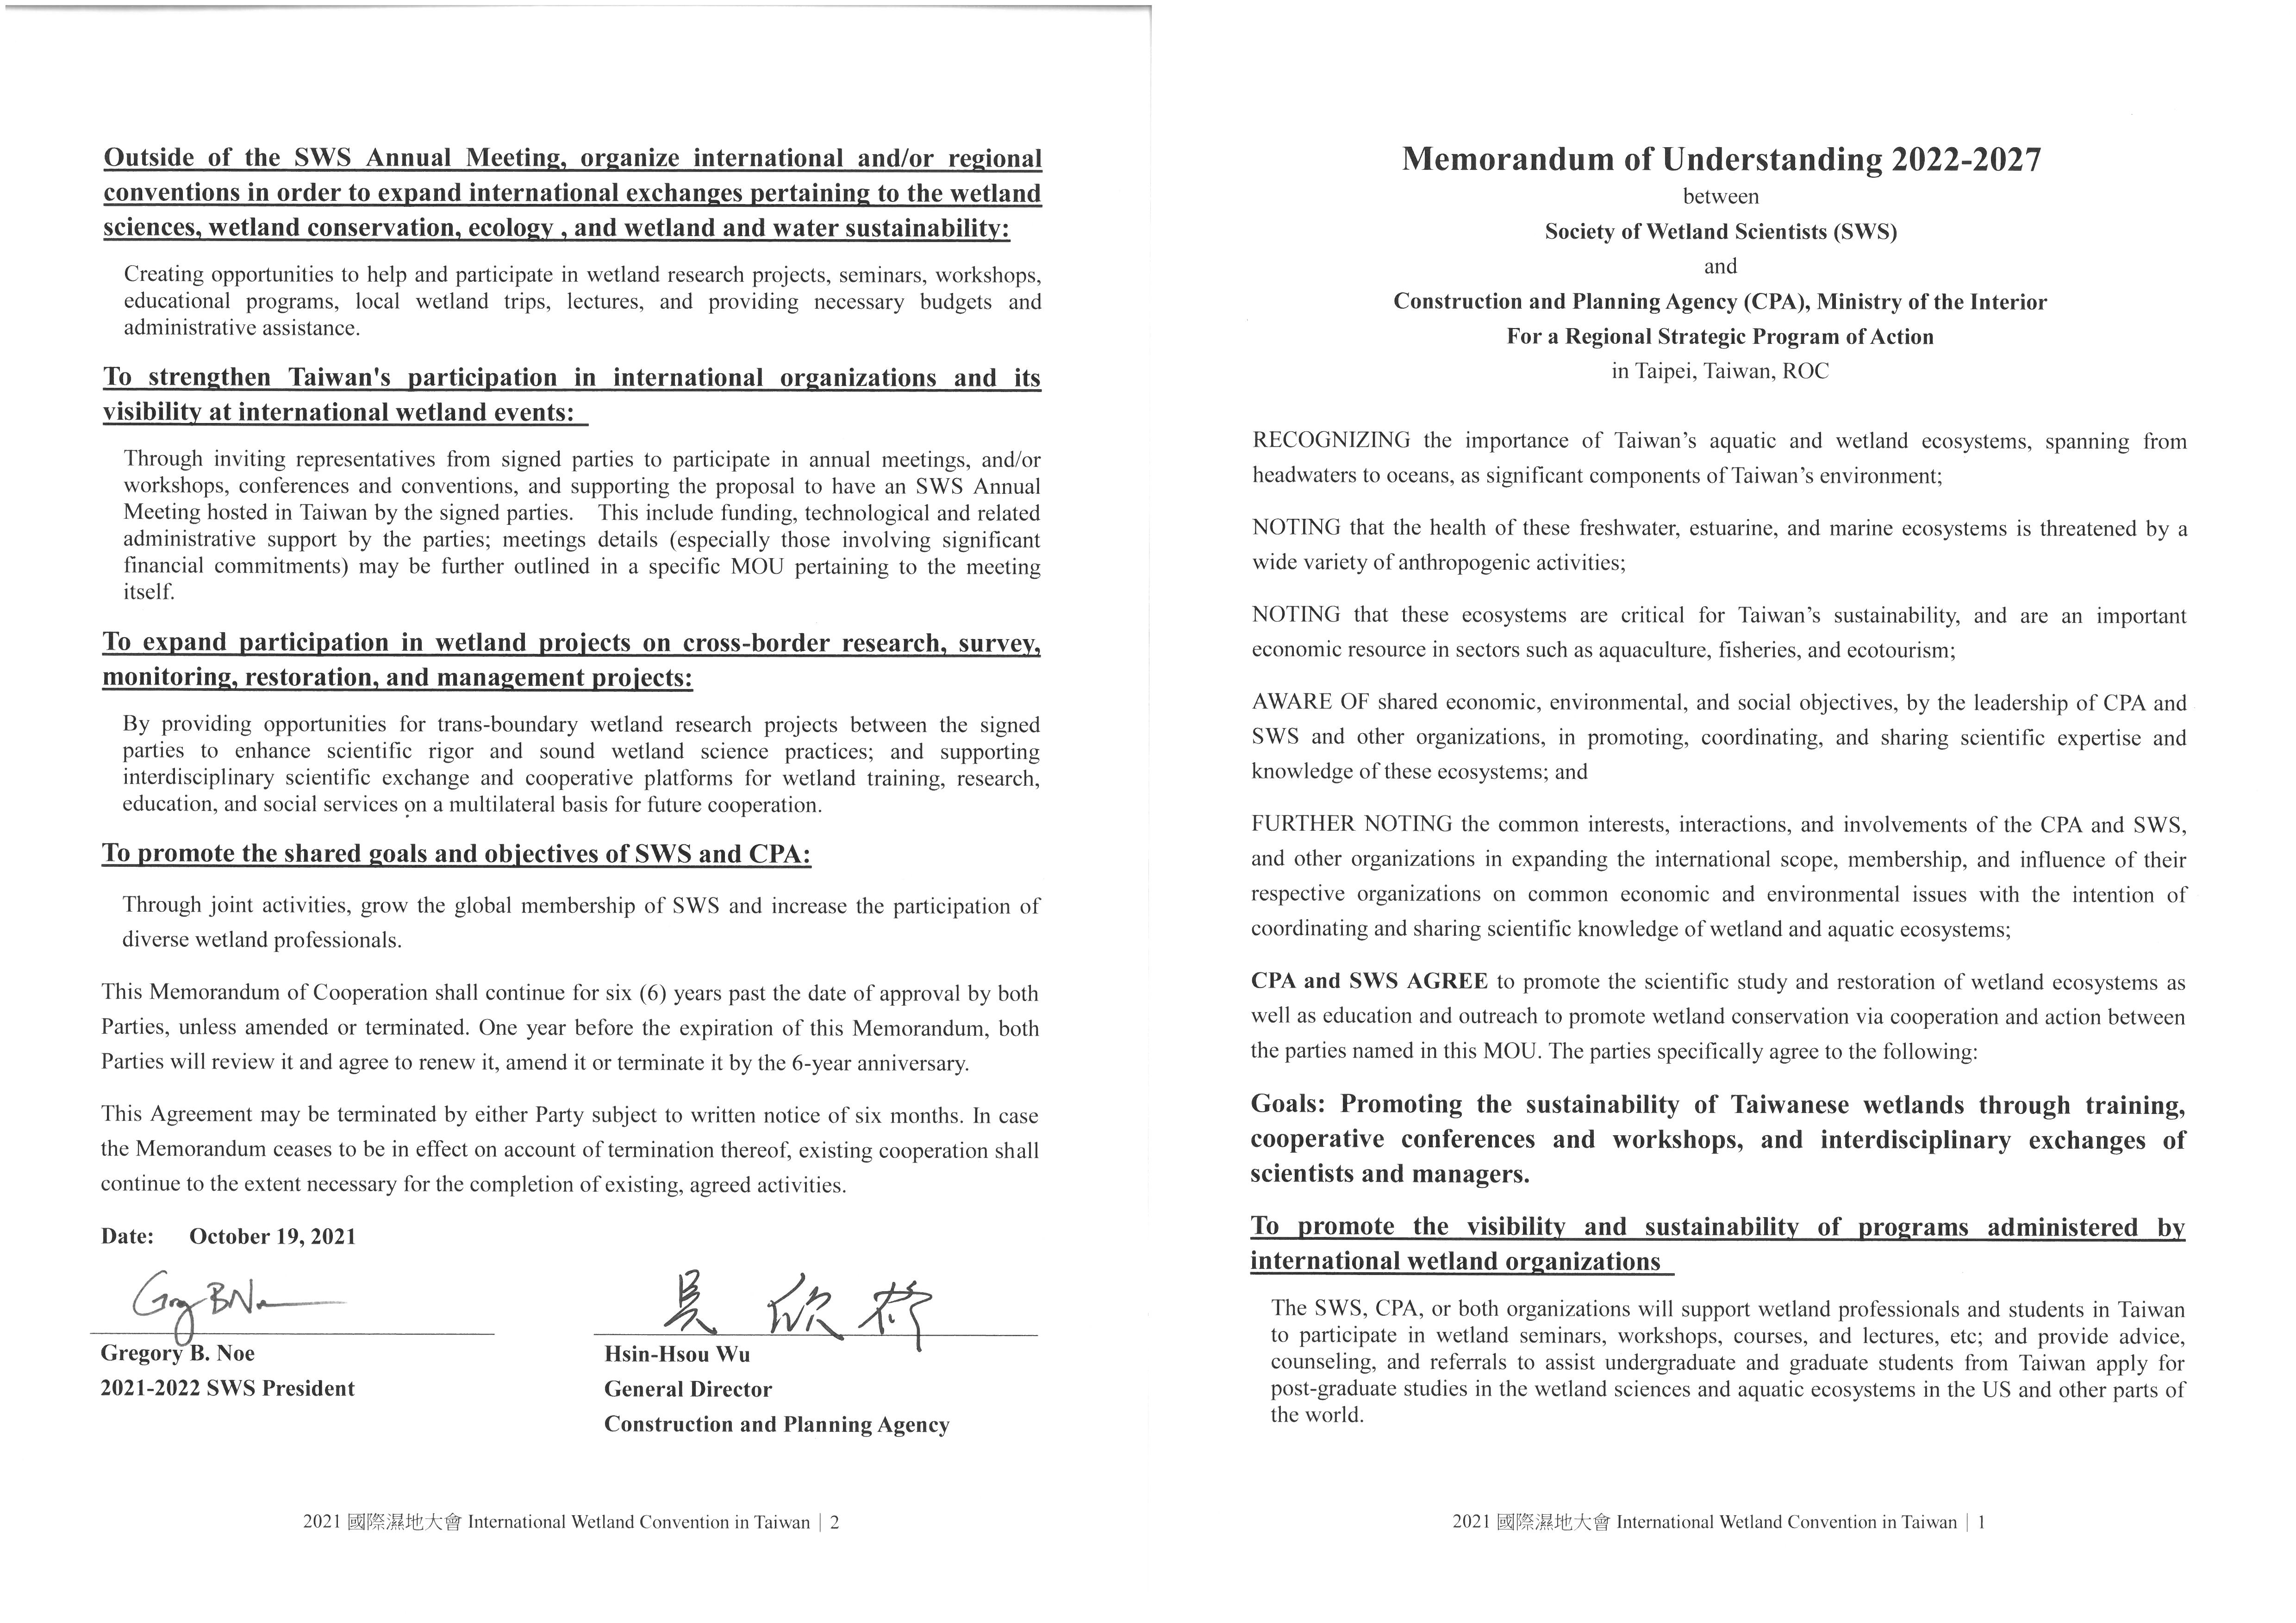 Memorandum of Understanding 2022-2027 between SWS and CPA